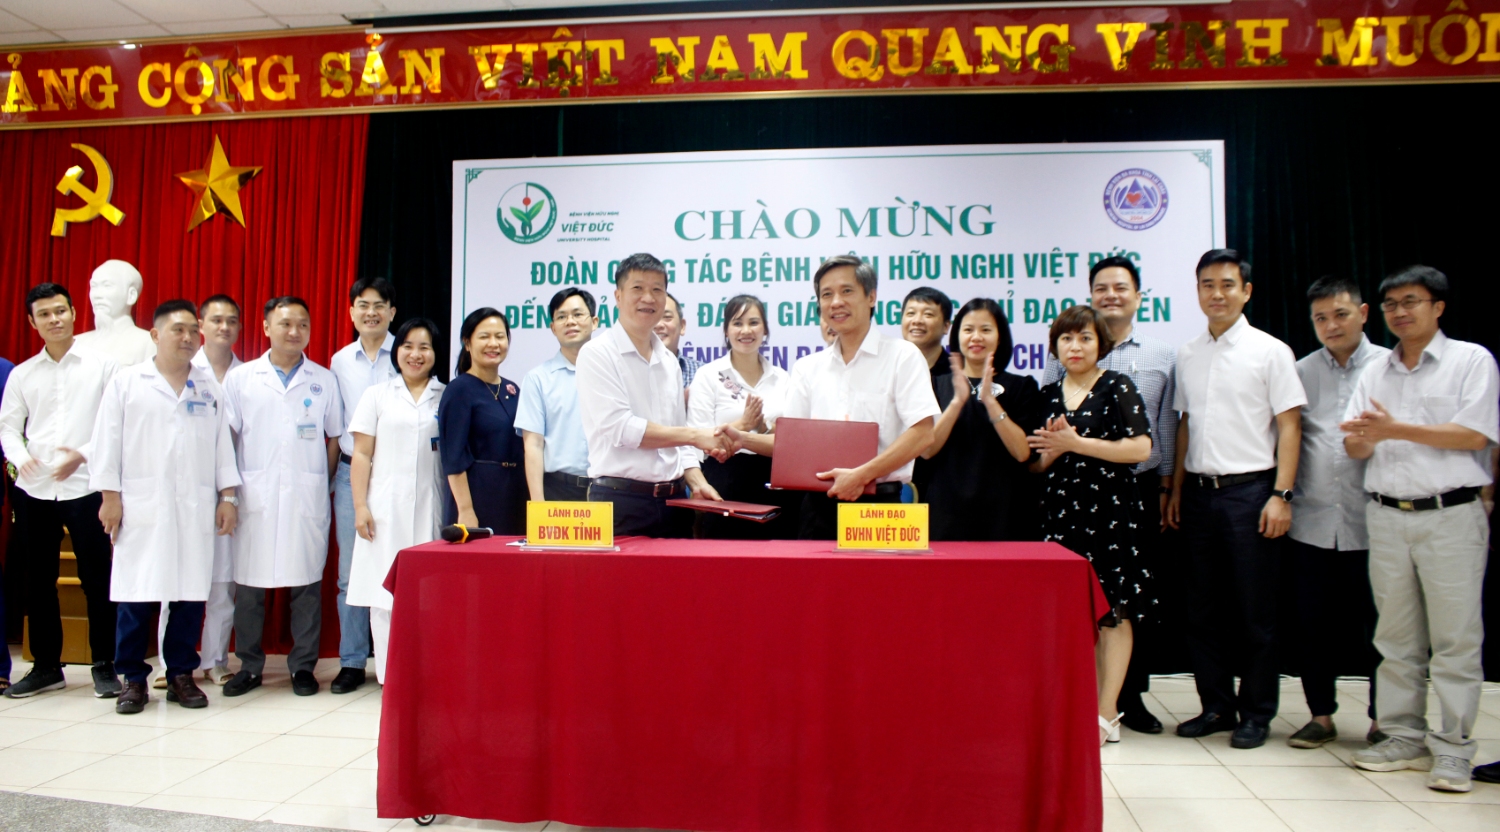 Đoàn công tác Bệnh viện Hữu Nghị Việt Đức và Bệnh viện Đa khoa tỉnh ký kết chuyển giao các dịch vụ kỹ thuật